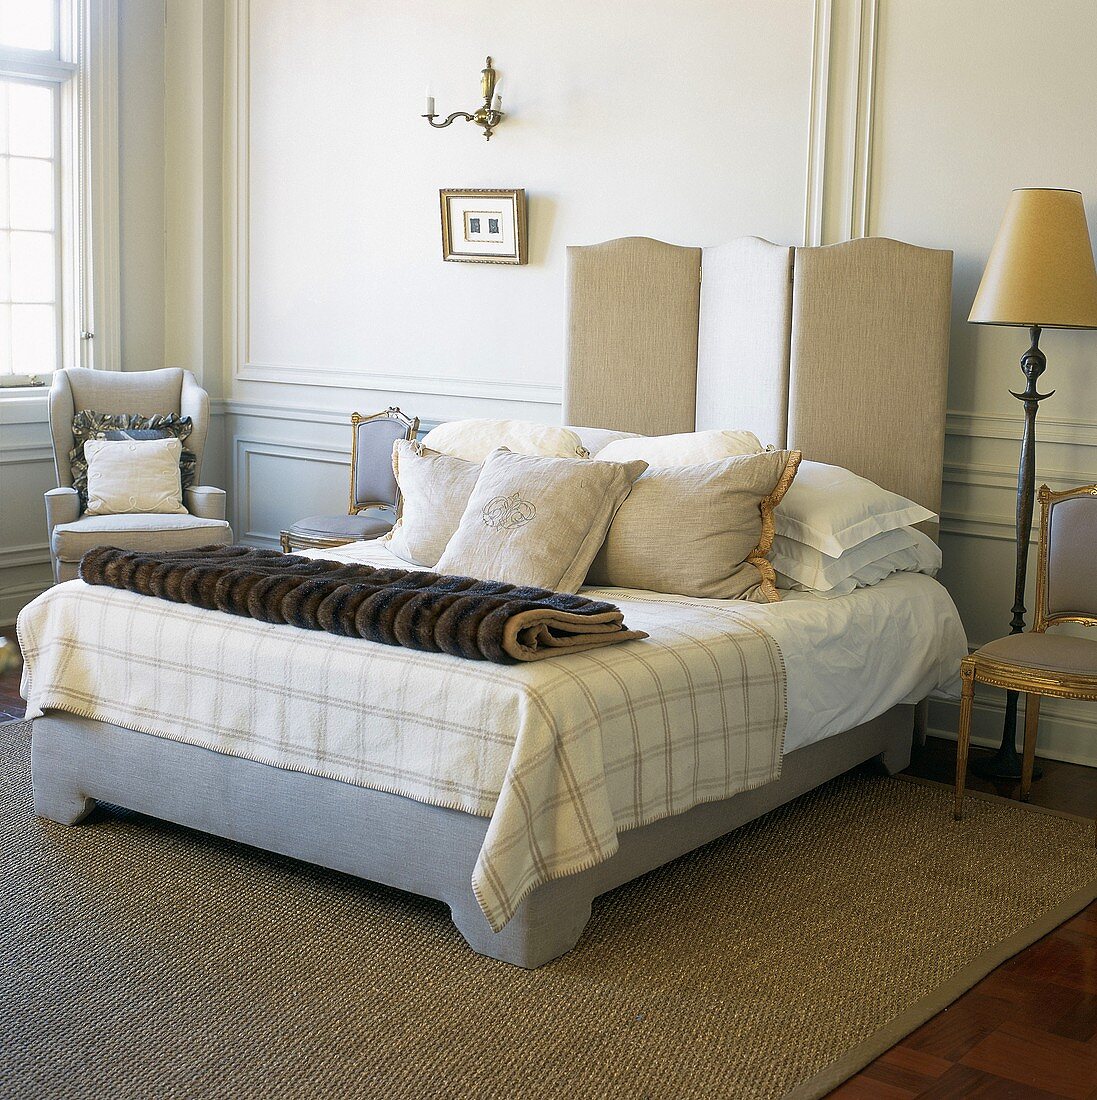 Französisches Bett mit diversen Kissen und Felldecke vor Wandvertäfelung